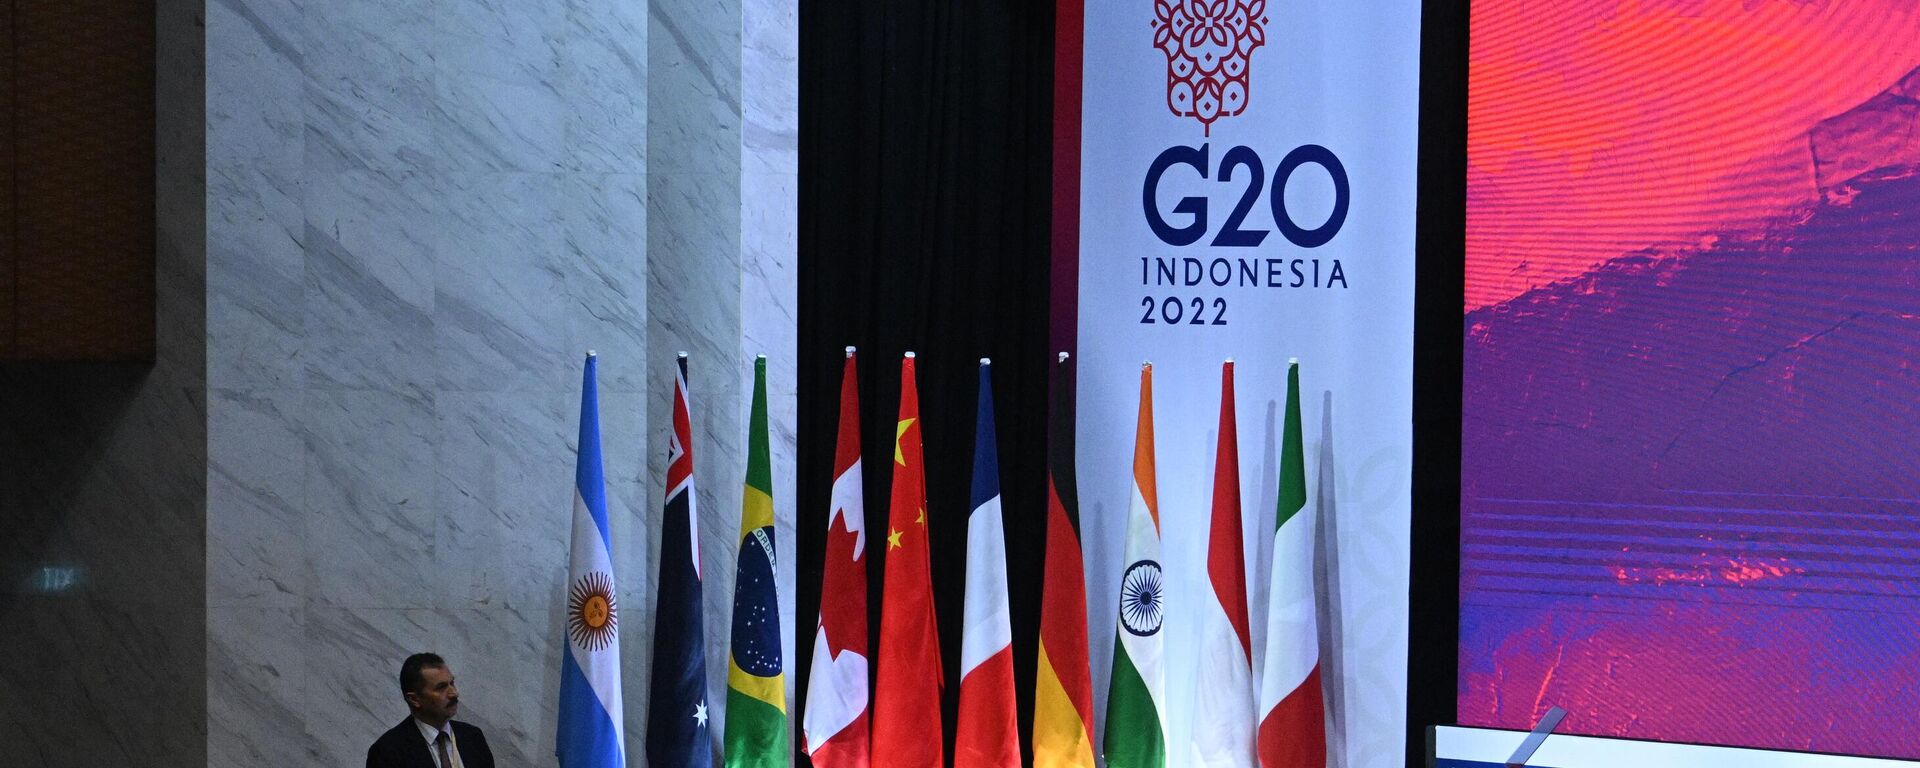 Las banderas de los países del G20 en la cumbre de Indonesia - Sputnik Mundo, 1920, 16.11.2022